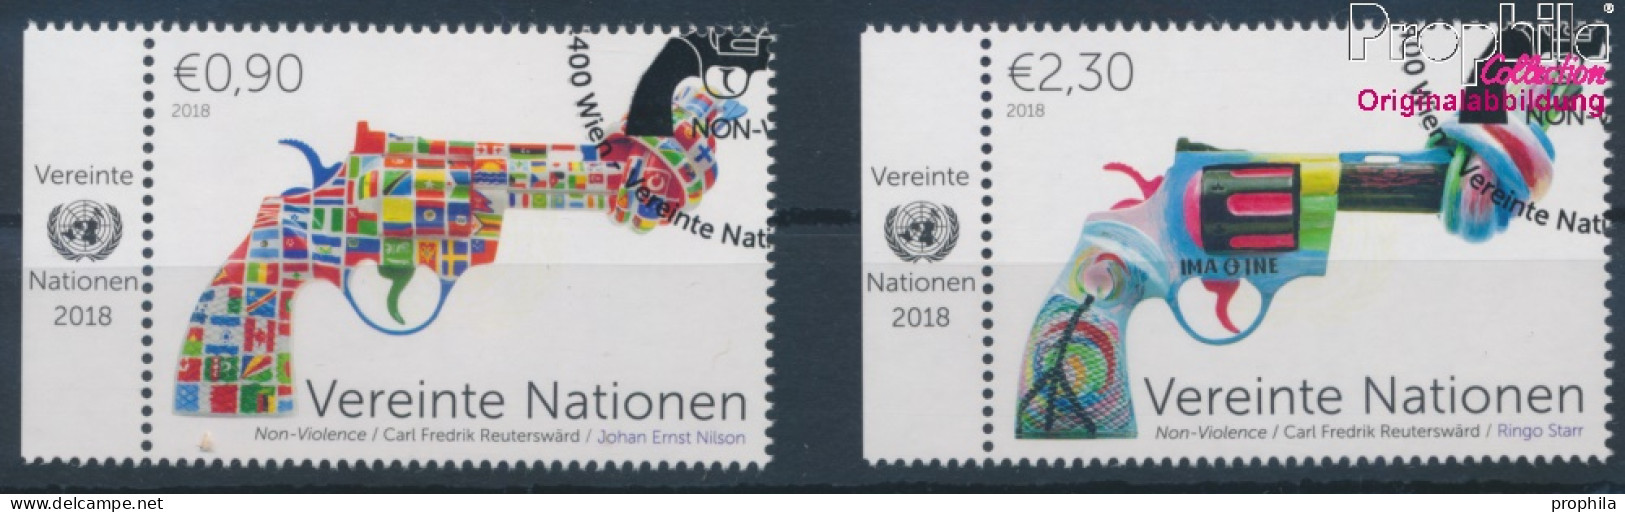 UNO - Wien 1041-1042 (kompl.Ausg.) Gestempelt 2018 Non Violence Project (10216425 - Gebruikt